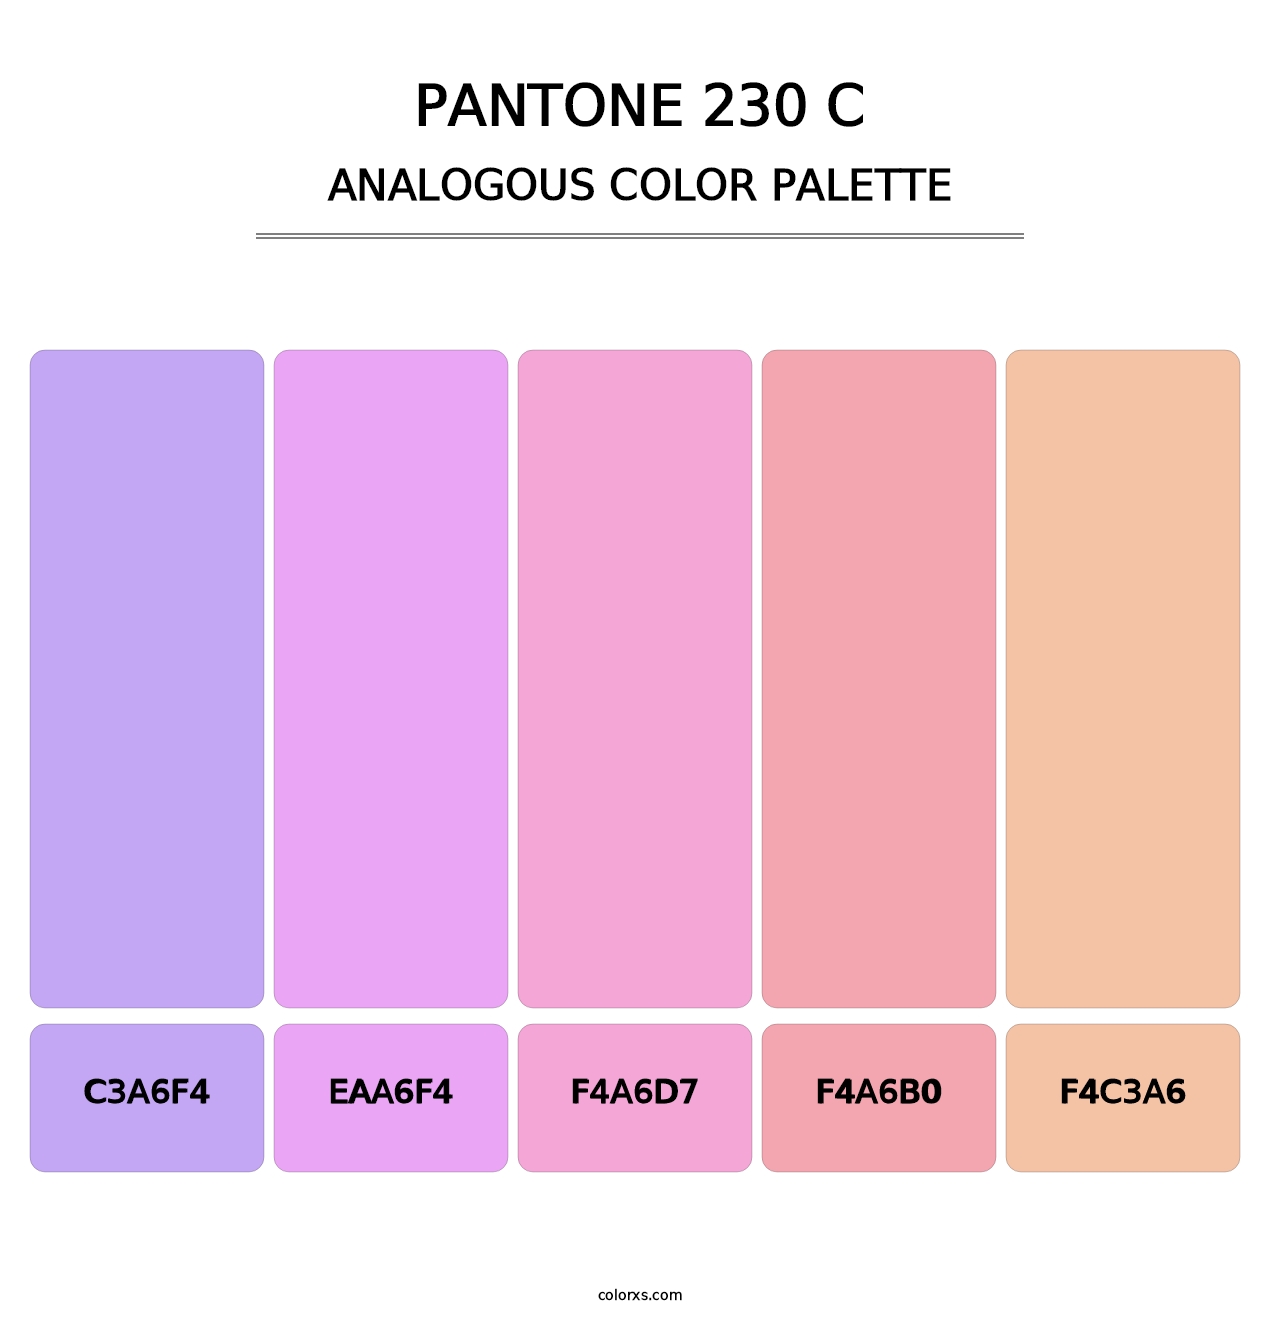 PANTONE 230 C - Analogous Color Palette